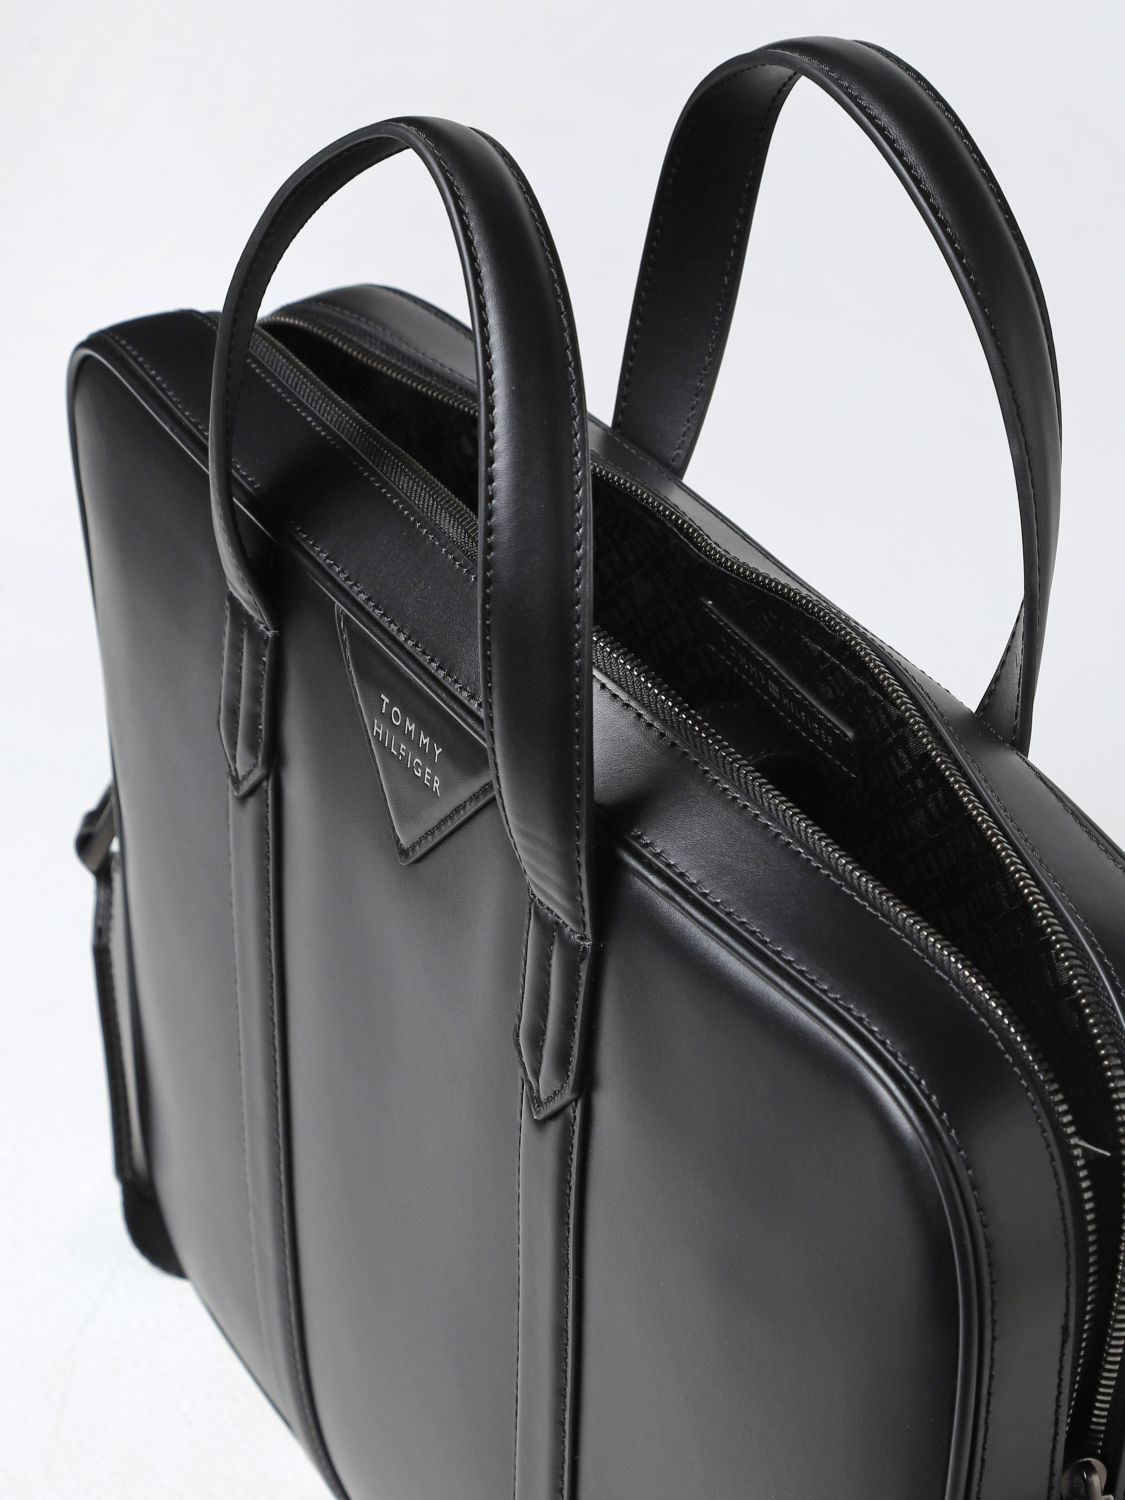 TOMMY HILFIGER: shoulder bag for men - Black | Tommy Hilfiger shoulder ...